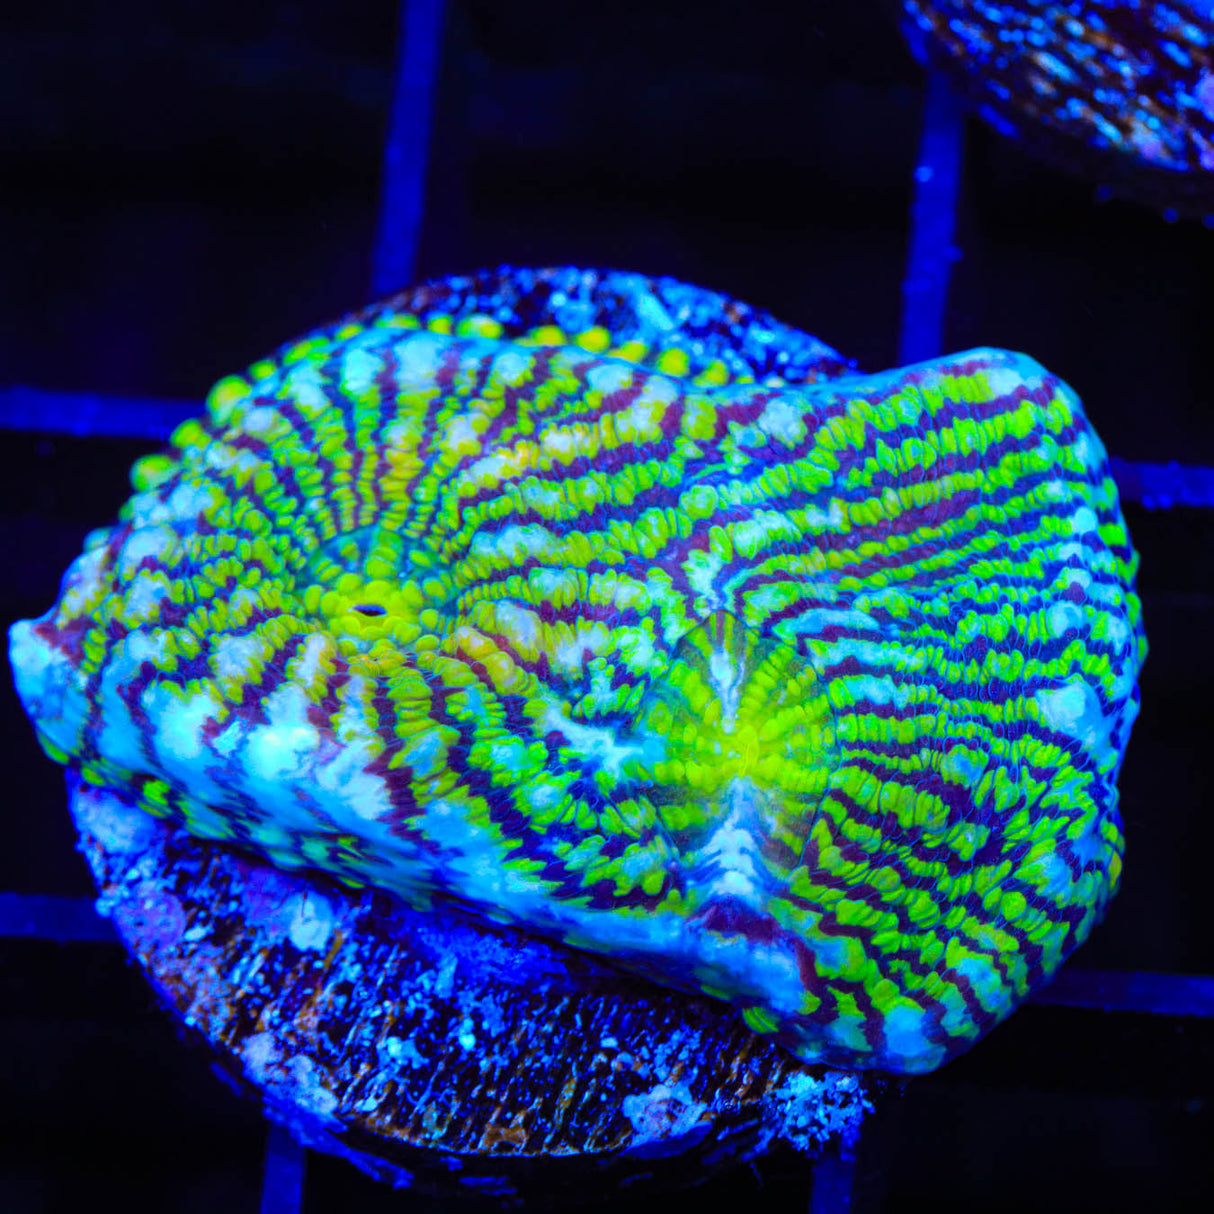 Convict Chalice Coral